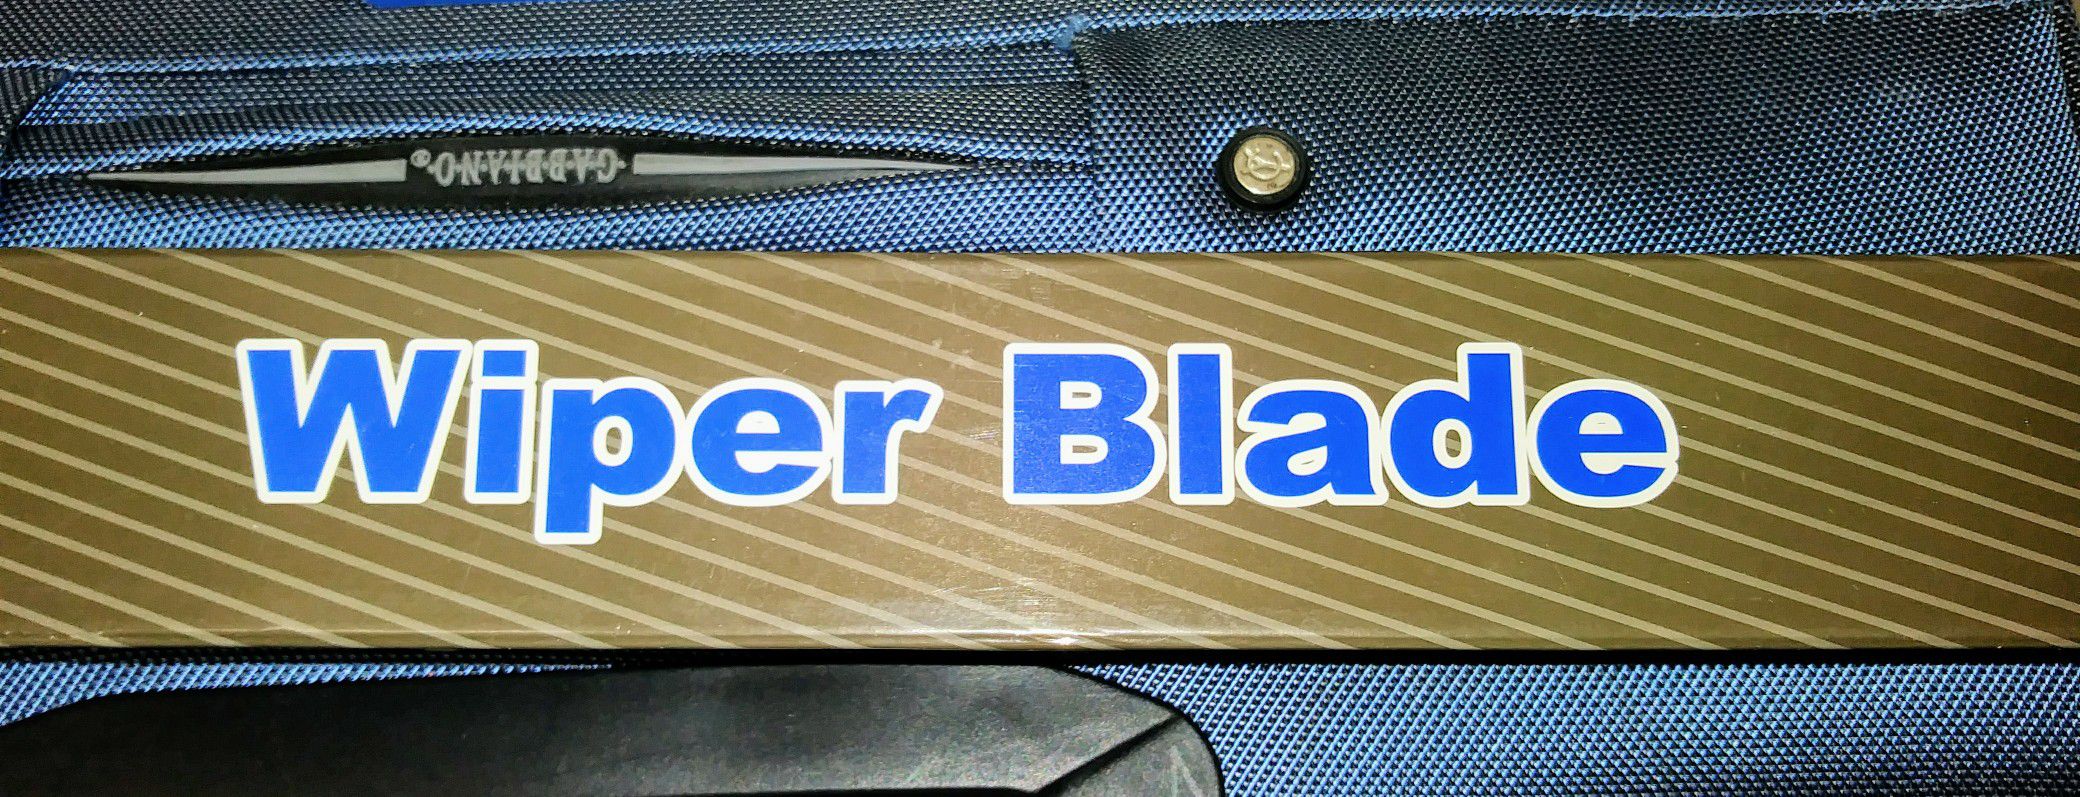 Wiper Blade